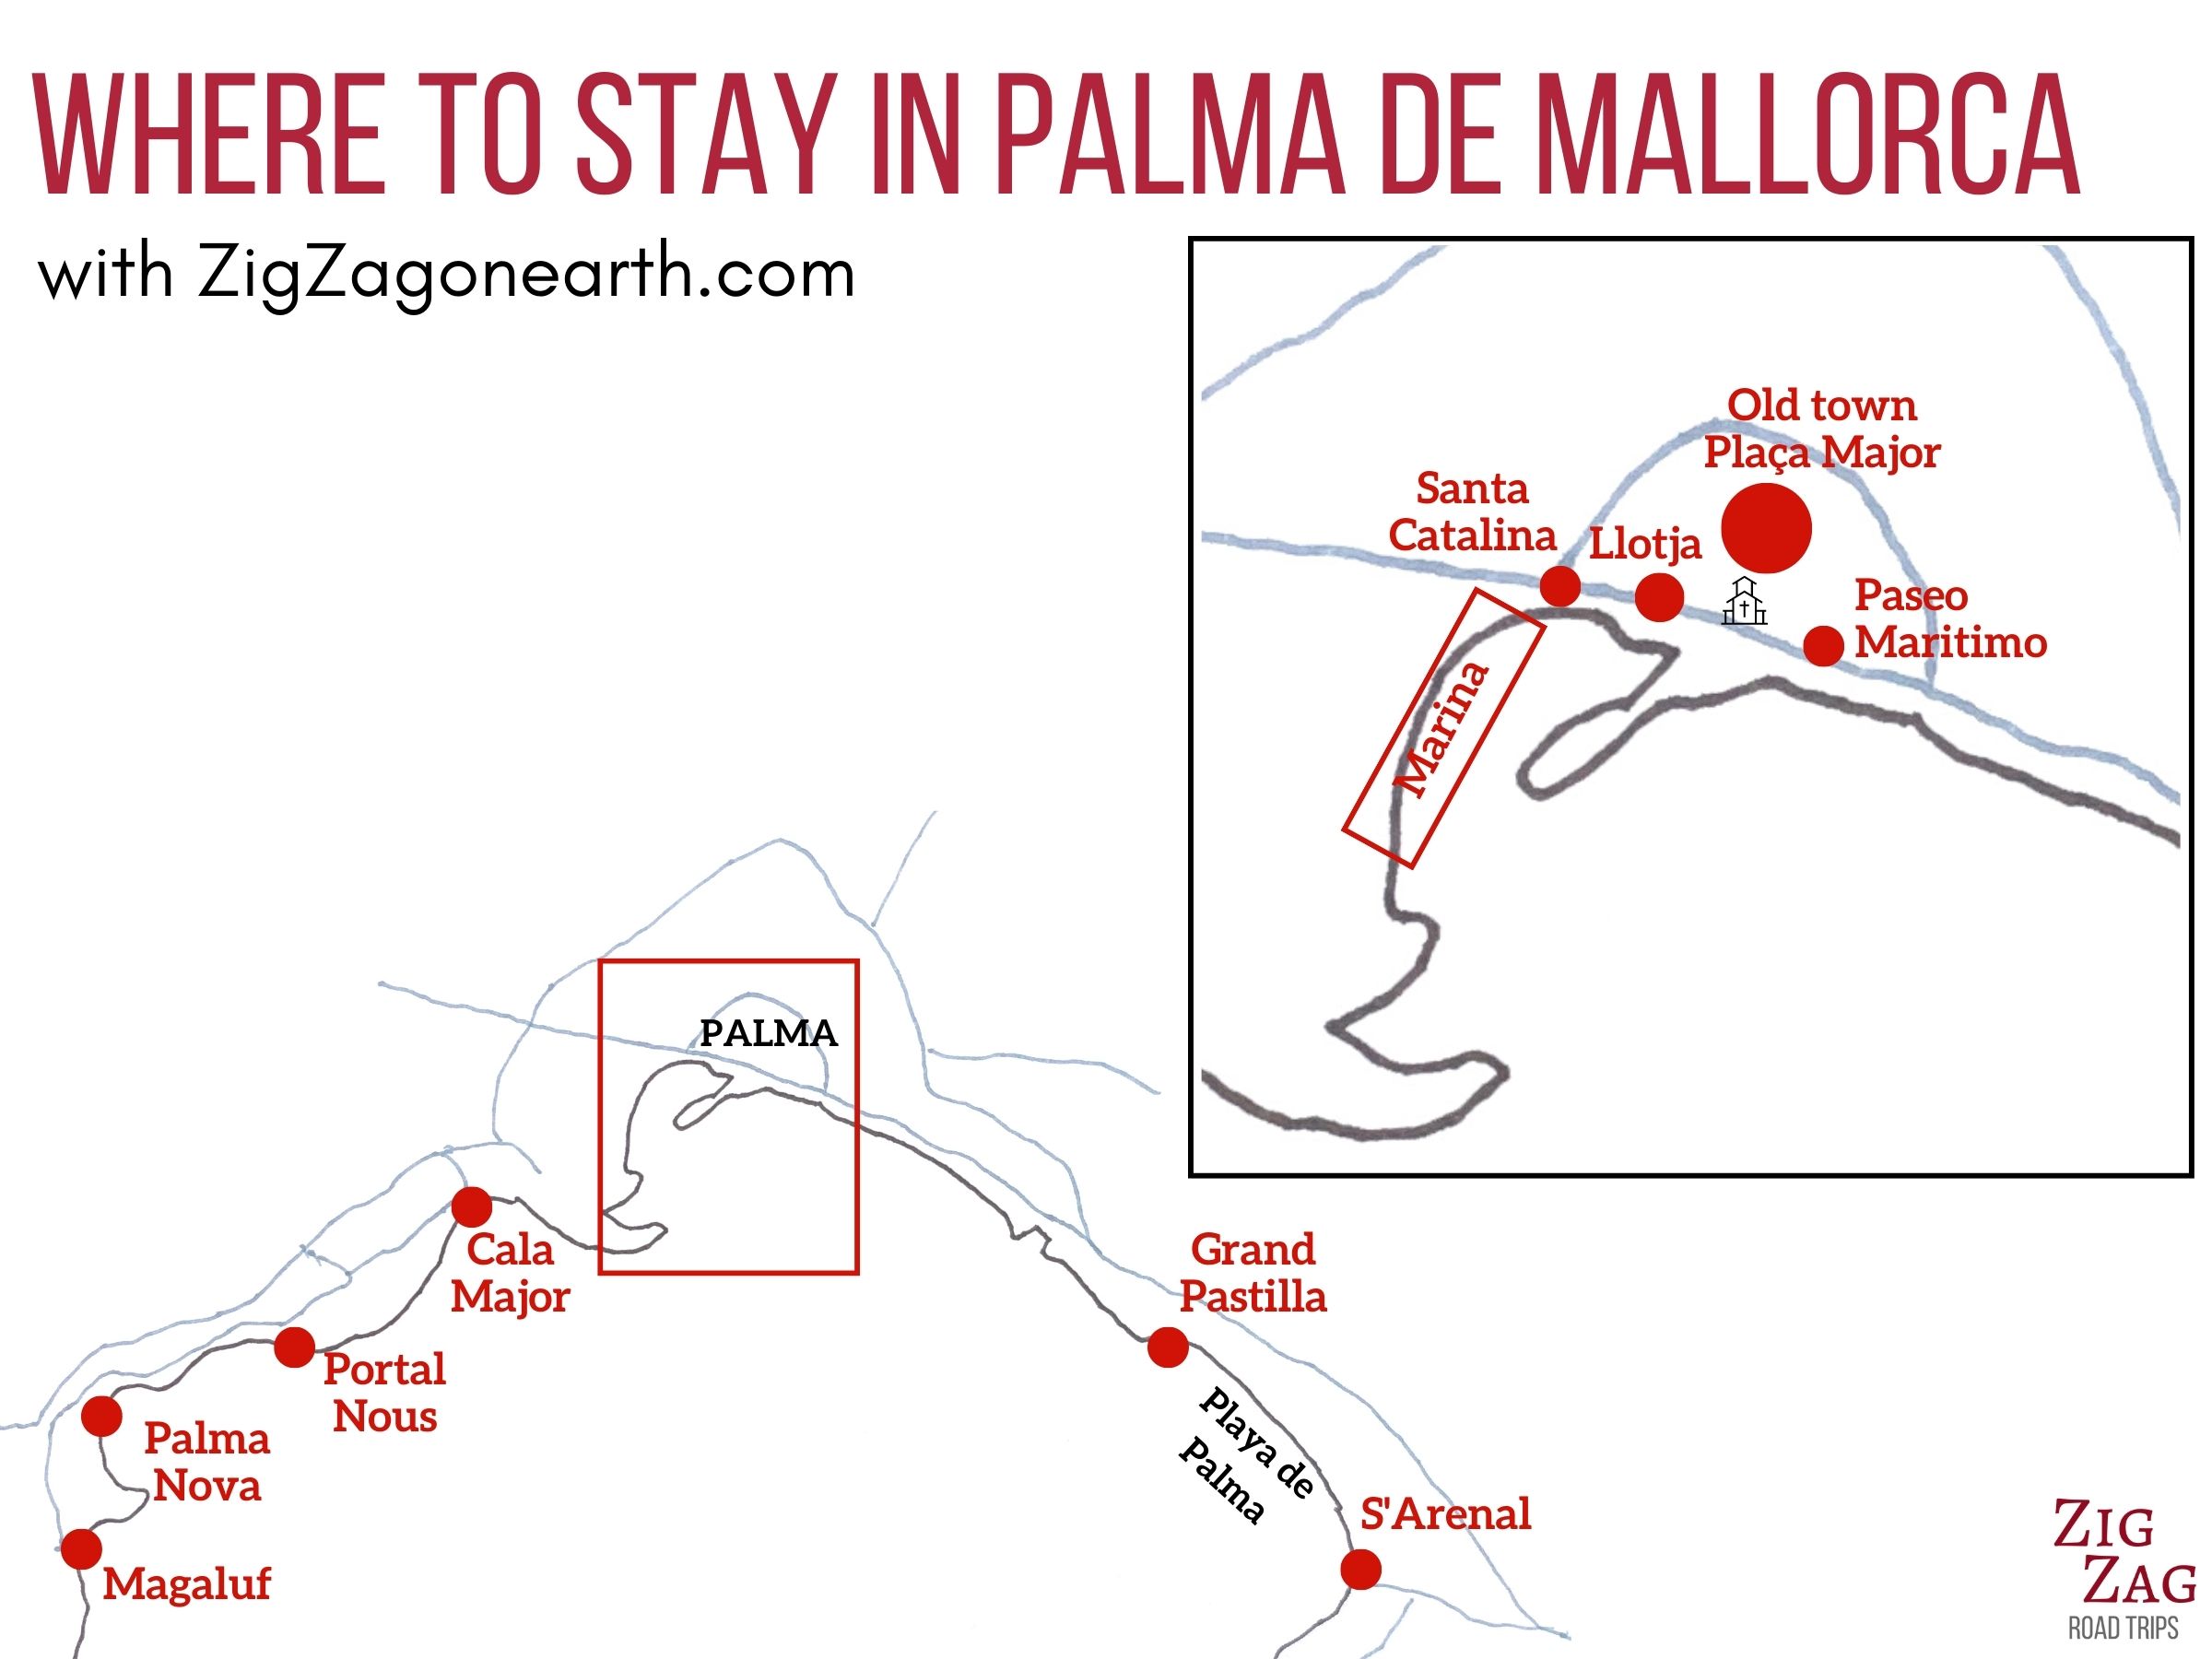 Mapa - melhores áreas para ficar em Palma de Mallorca